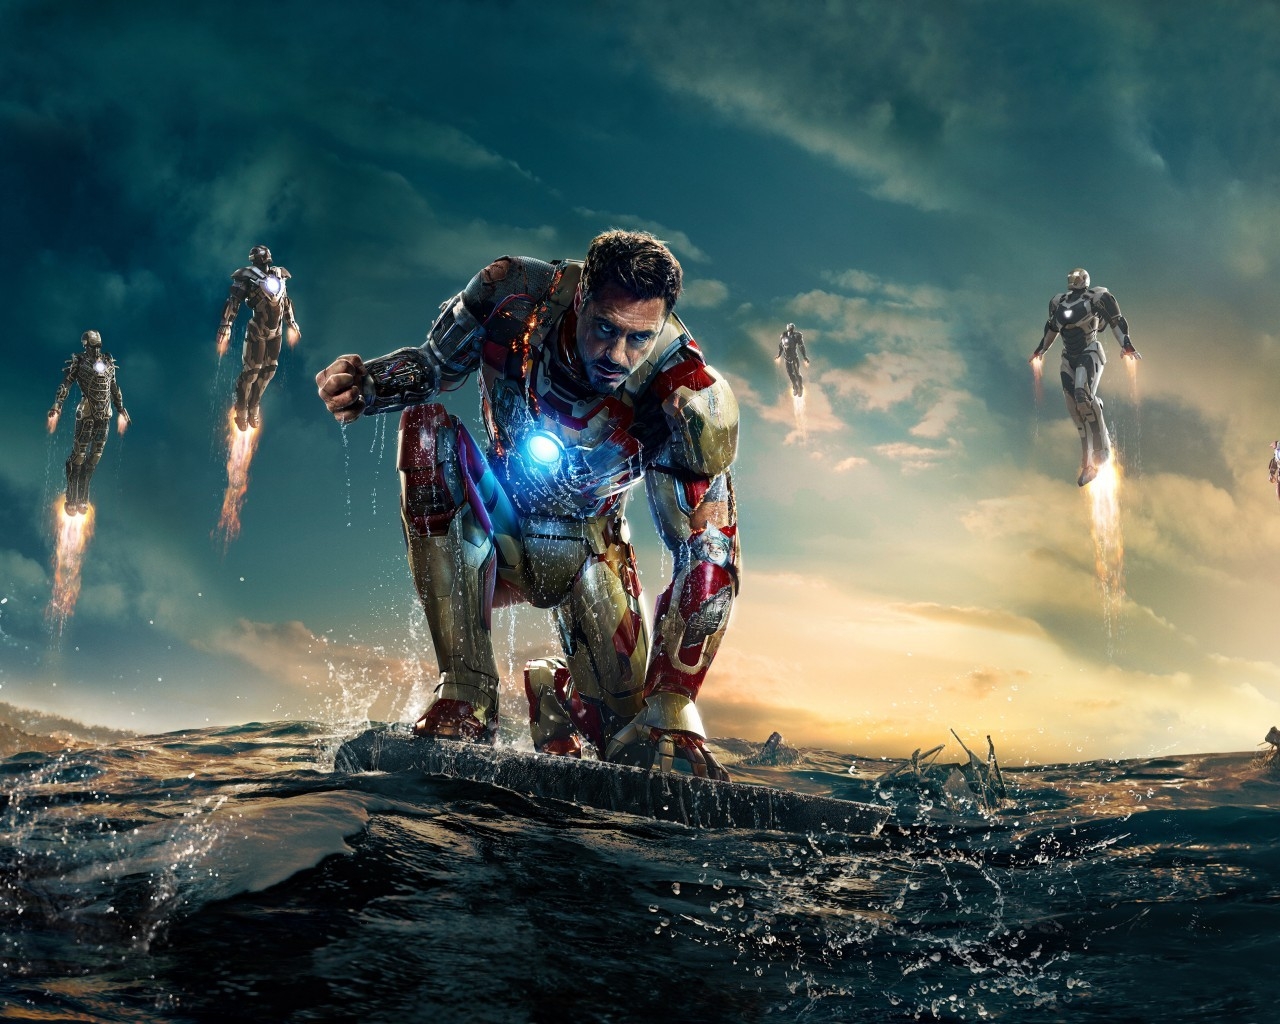 Iron Man 3 Robert Downey Jr for 1280 x 1024 resolution